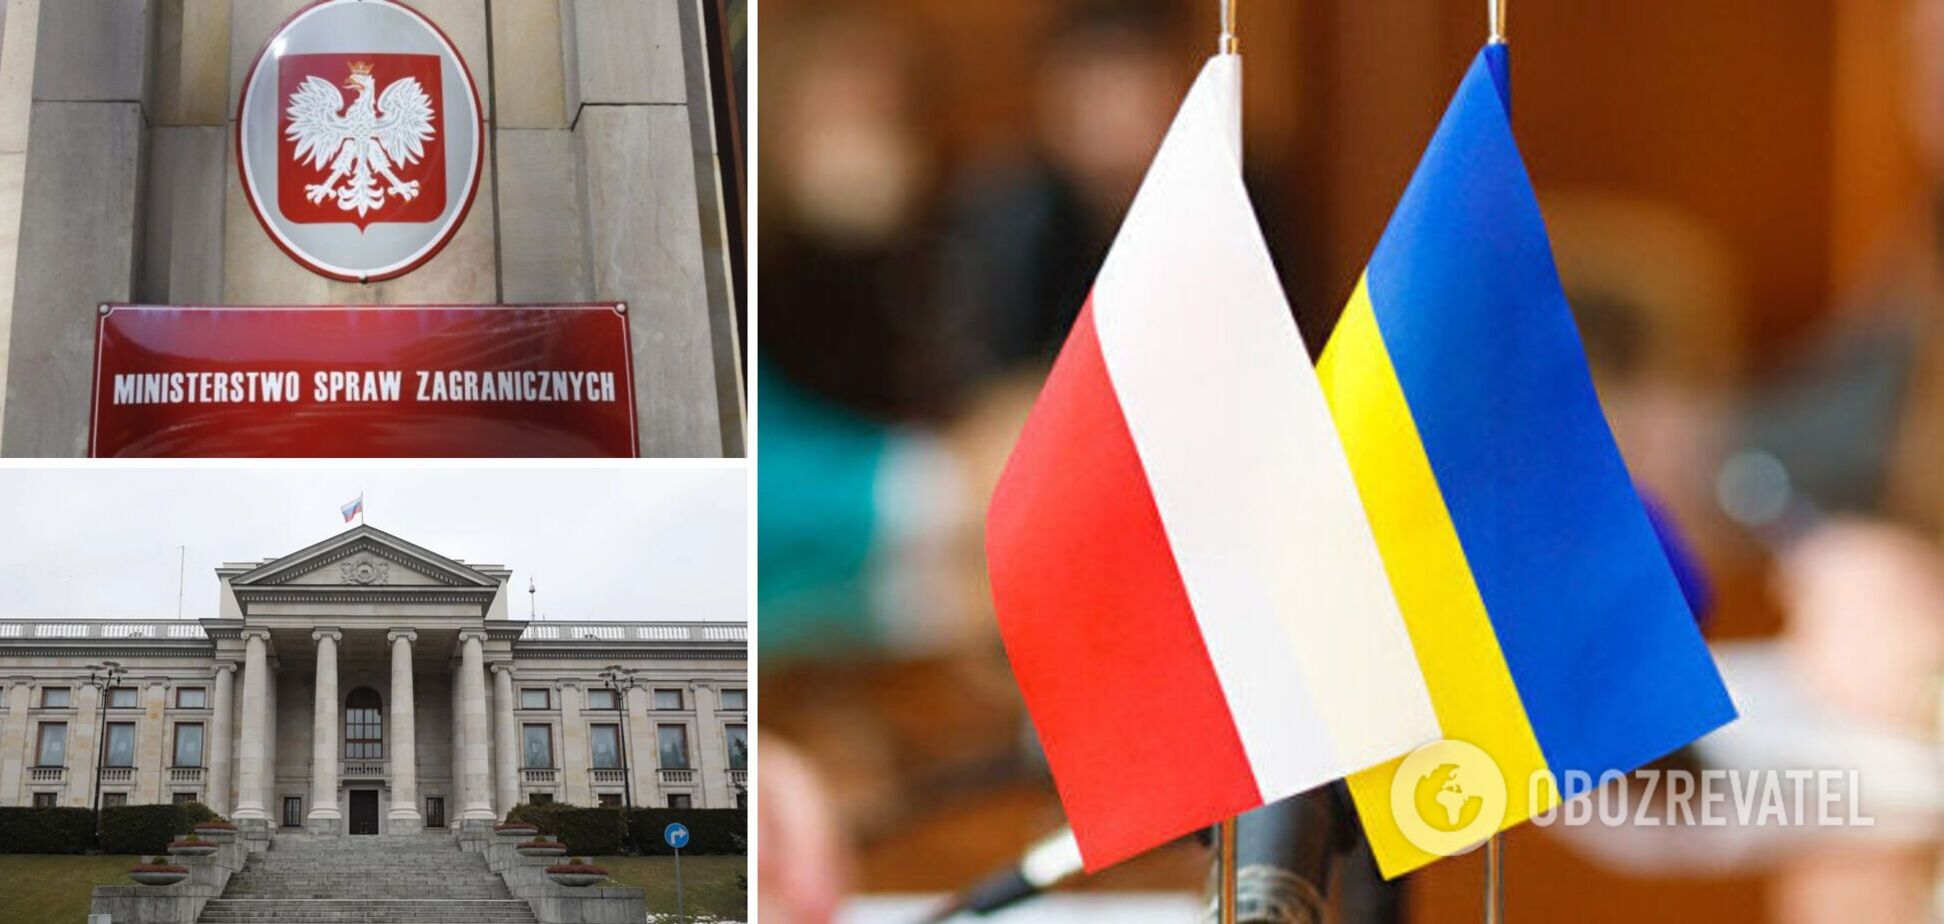 Польша хочет выслать десятки российских дипломатов, которых заподозрили в шпионаже – СМИ